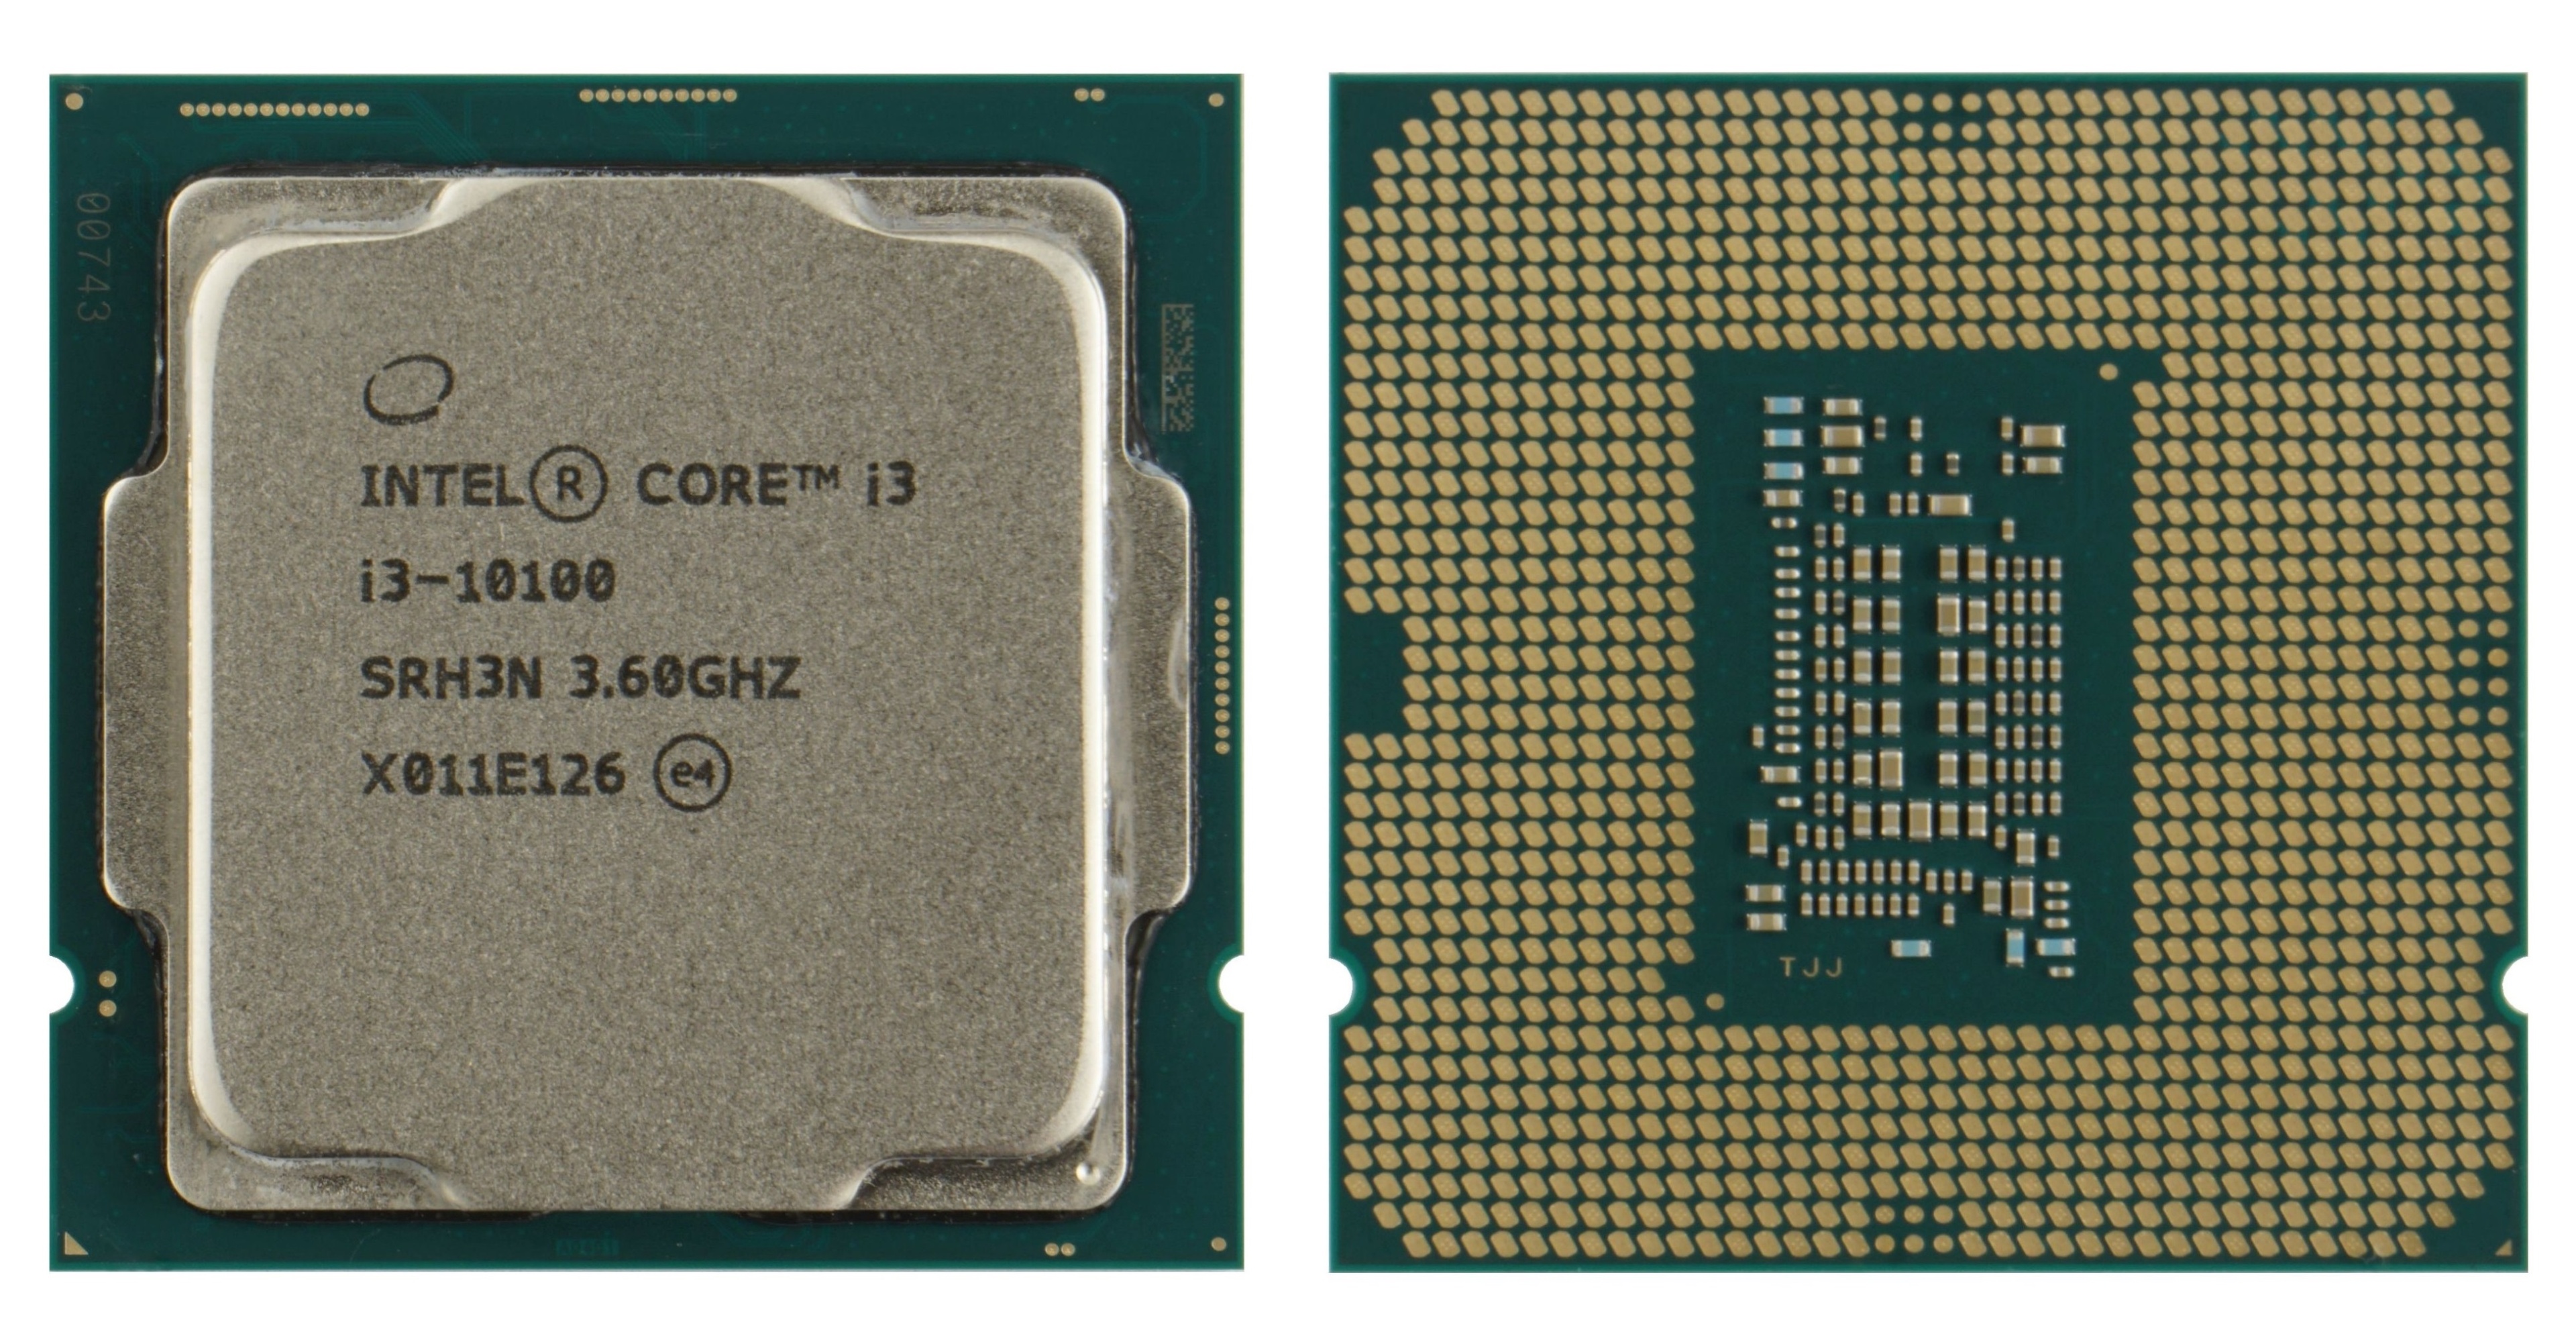 Интел core i3. Intel Core i3-10105f. Процессор Intel Core i3-10100f. Процессор Intel Core i3-10105f Box. Intel Core i3 10100f OEM.